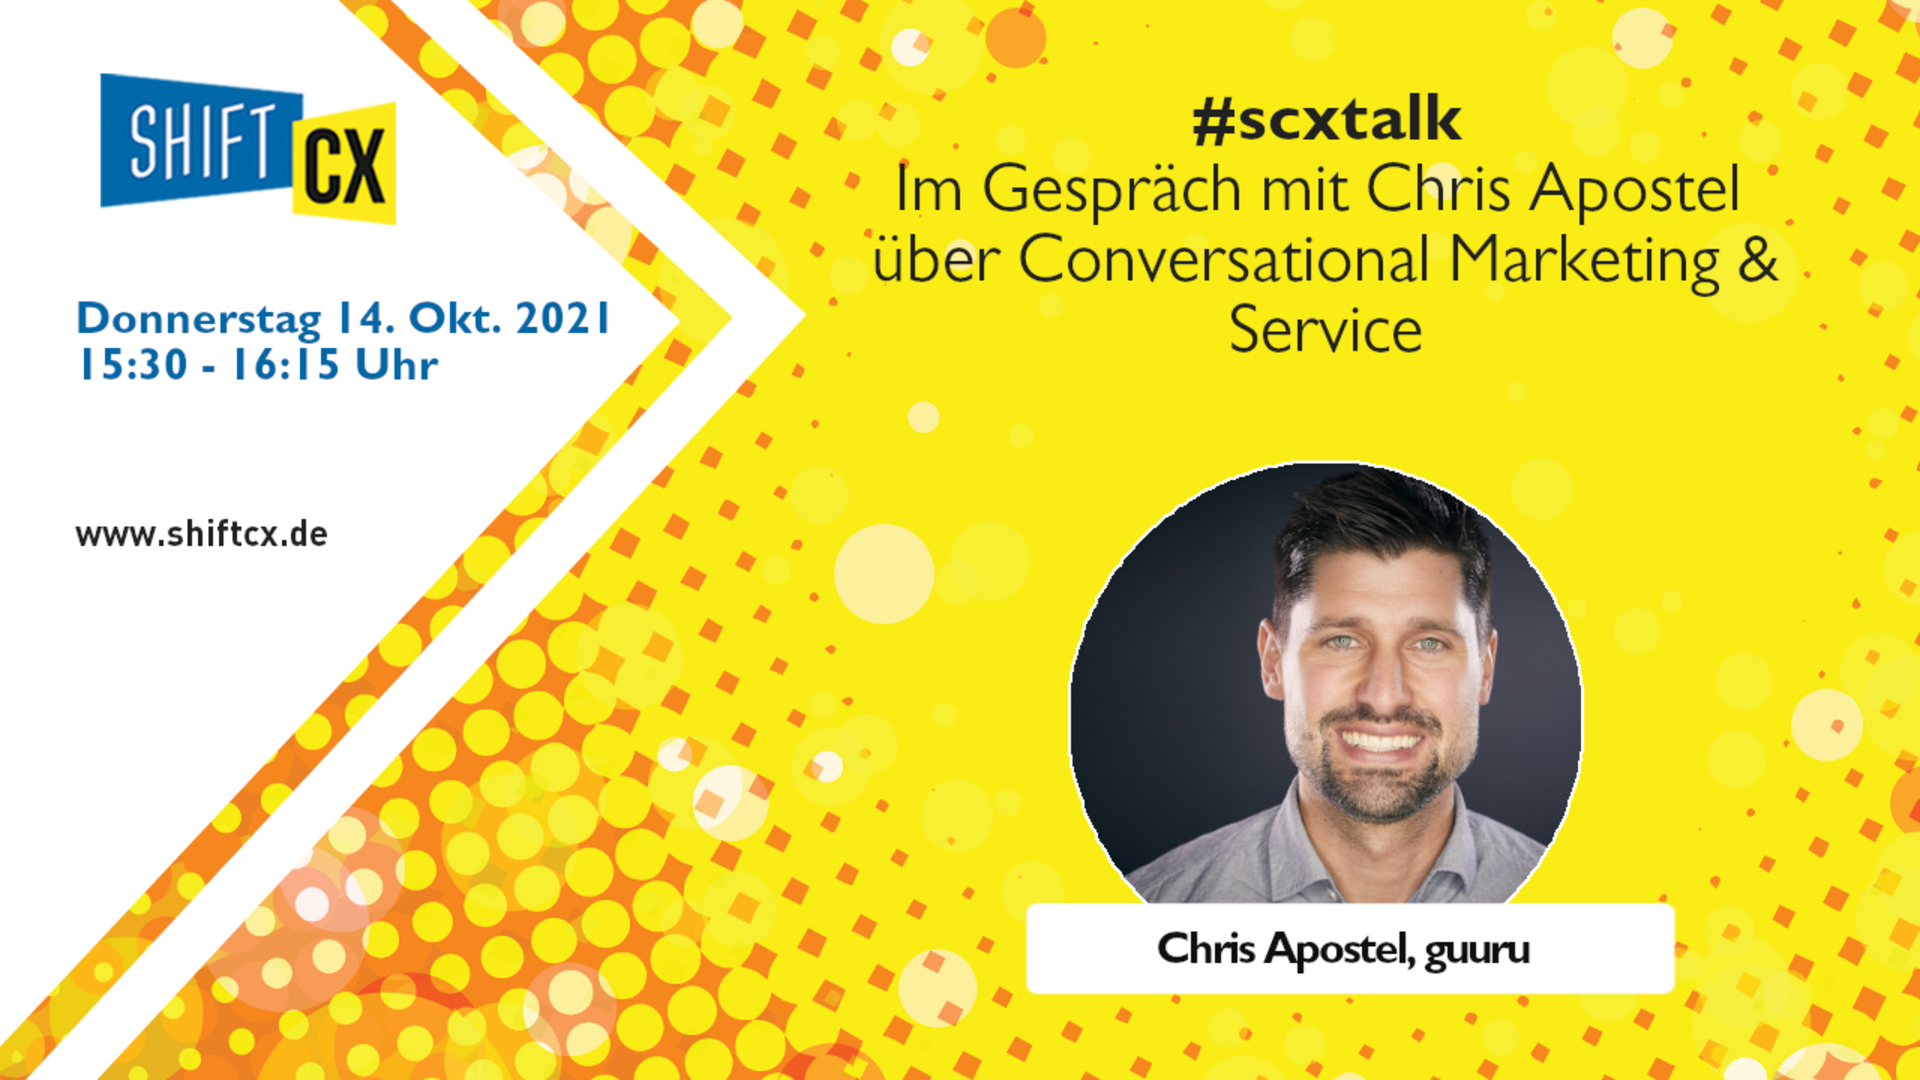 Im Gespräch mit Chris Apostel über Conversational Marketing & Service